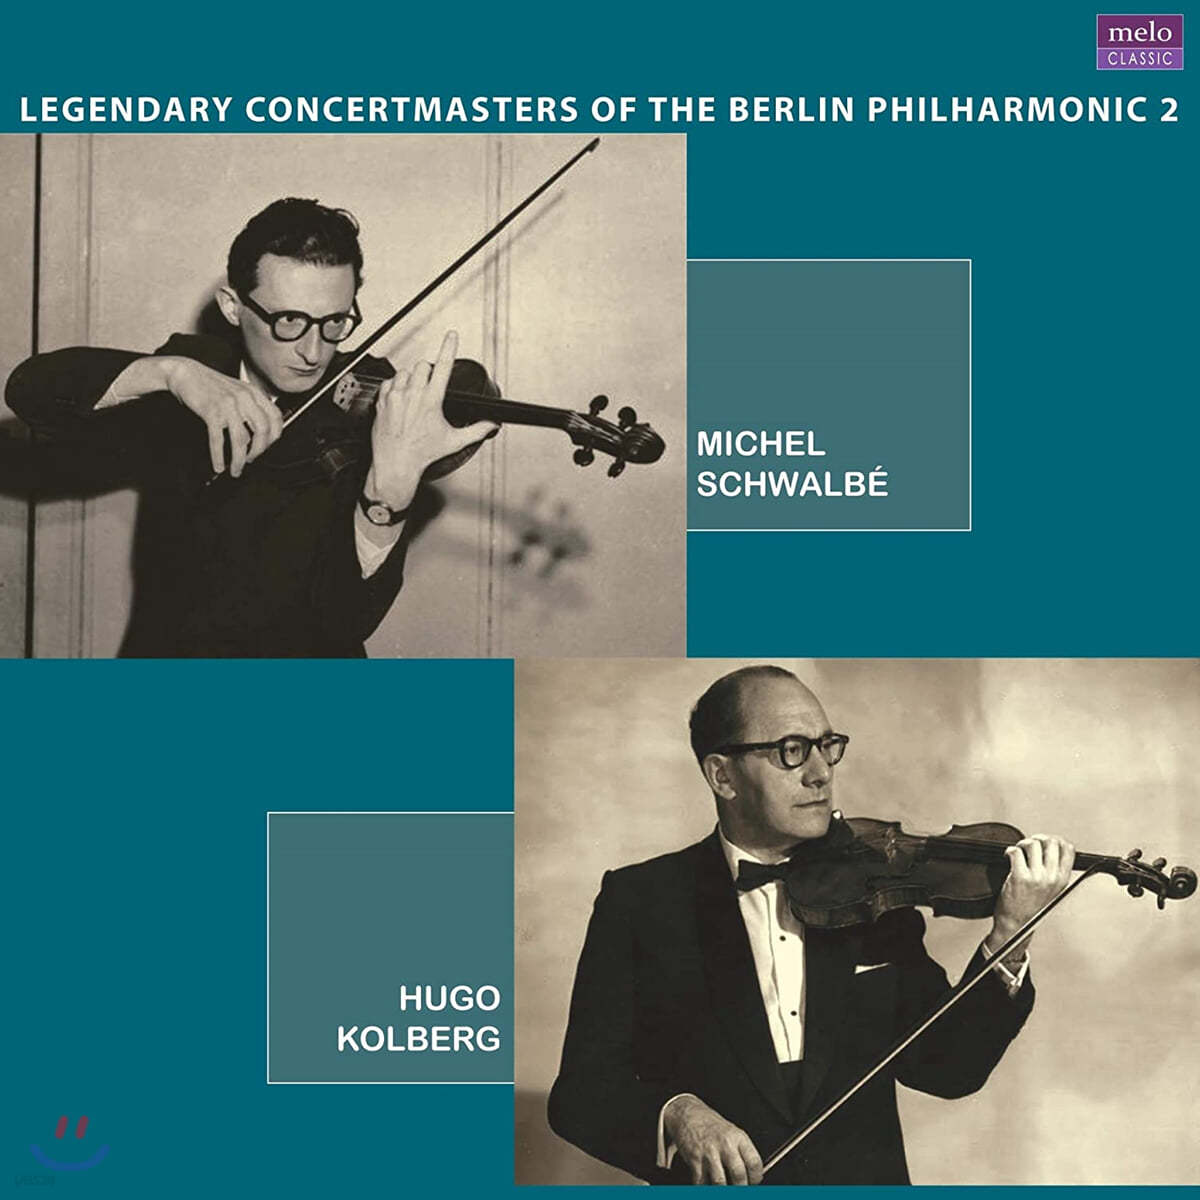 베를린 필의 전설의 악장들 2집 - 미셸 슈발베, 후고 콜베르크 (Legendary Concertmasters Of the Berlin Philharmonice 2) [2LP] 